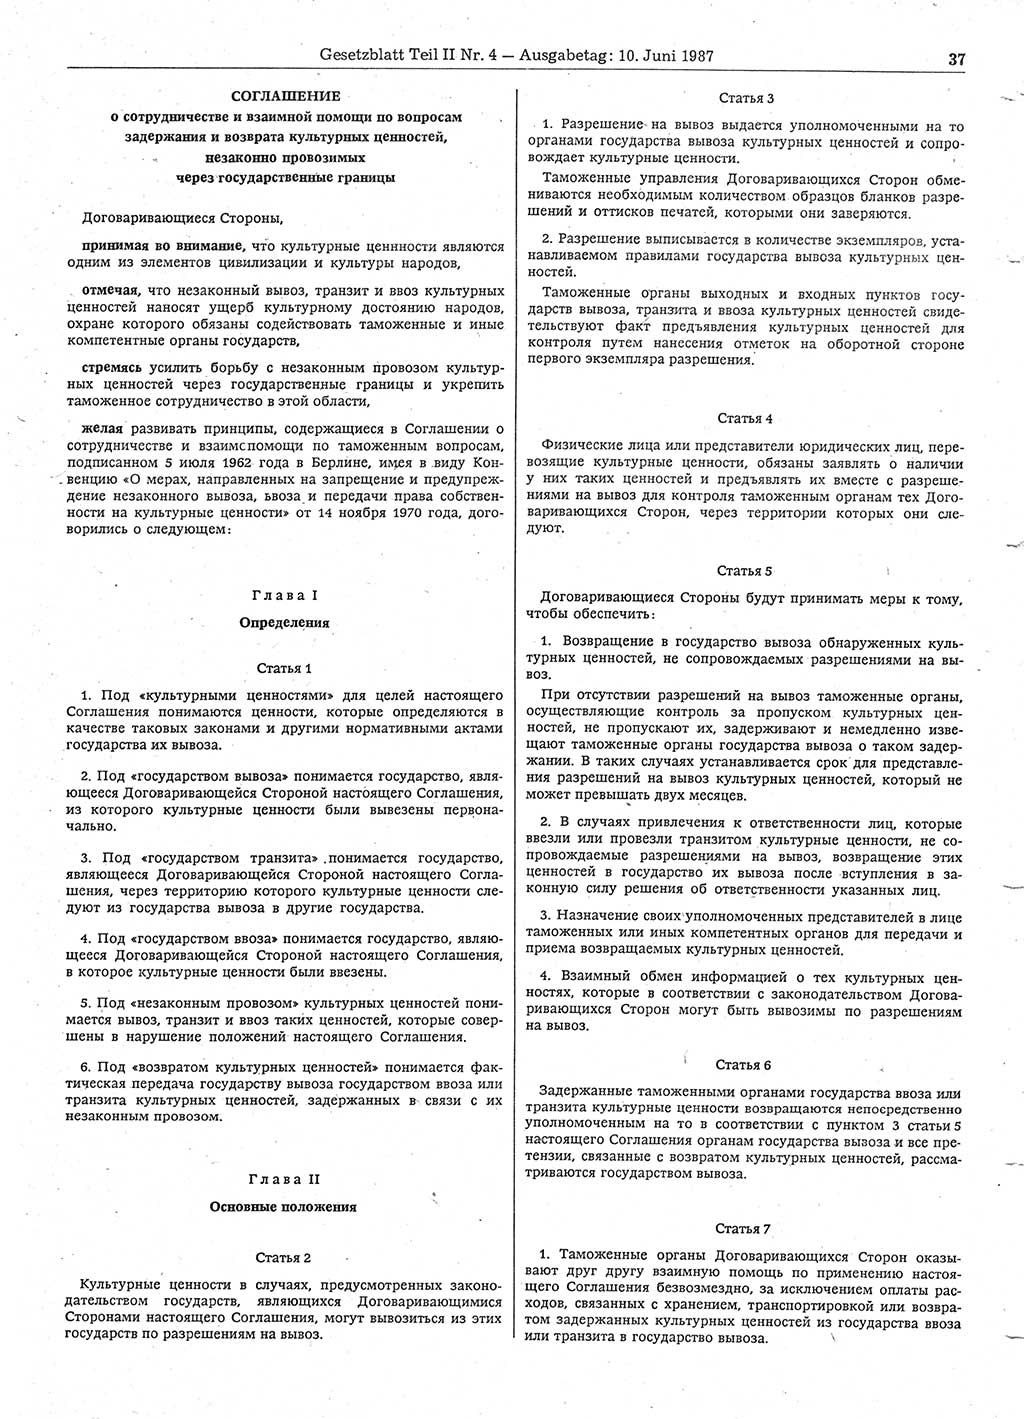 Gesetzblatt (GBl.) der Deutschen Demokratischen Republik (DDR) Teil ⅠⅠ 1987, Seite 37 (GBl. DDR ⅠⅠ 1987, S. 37)